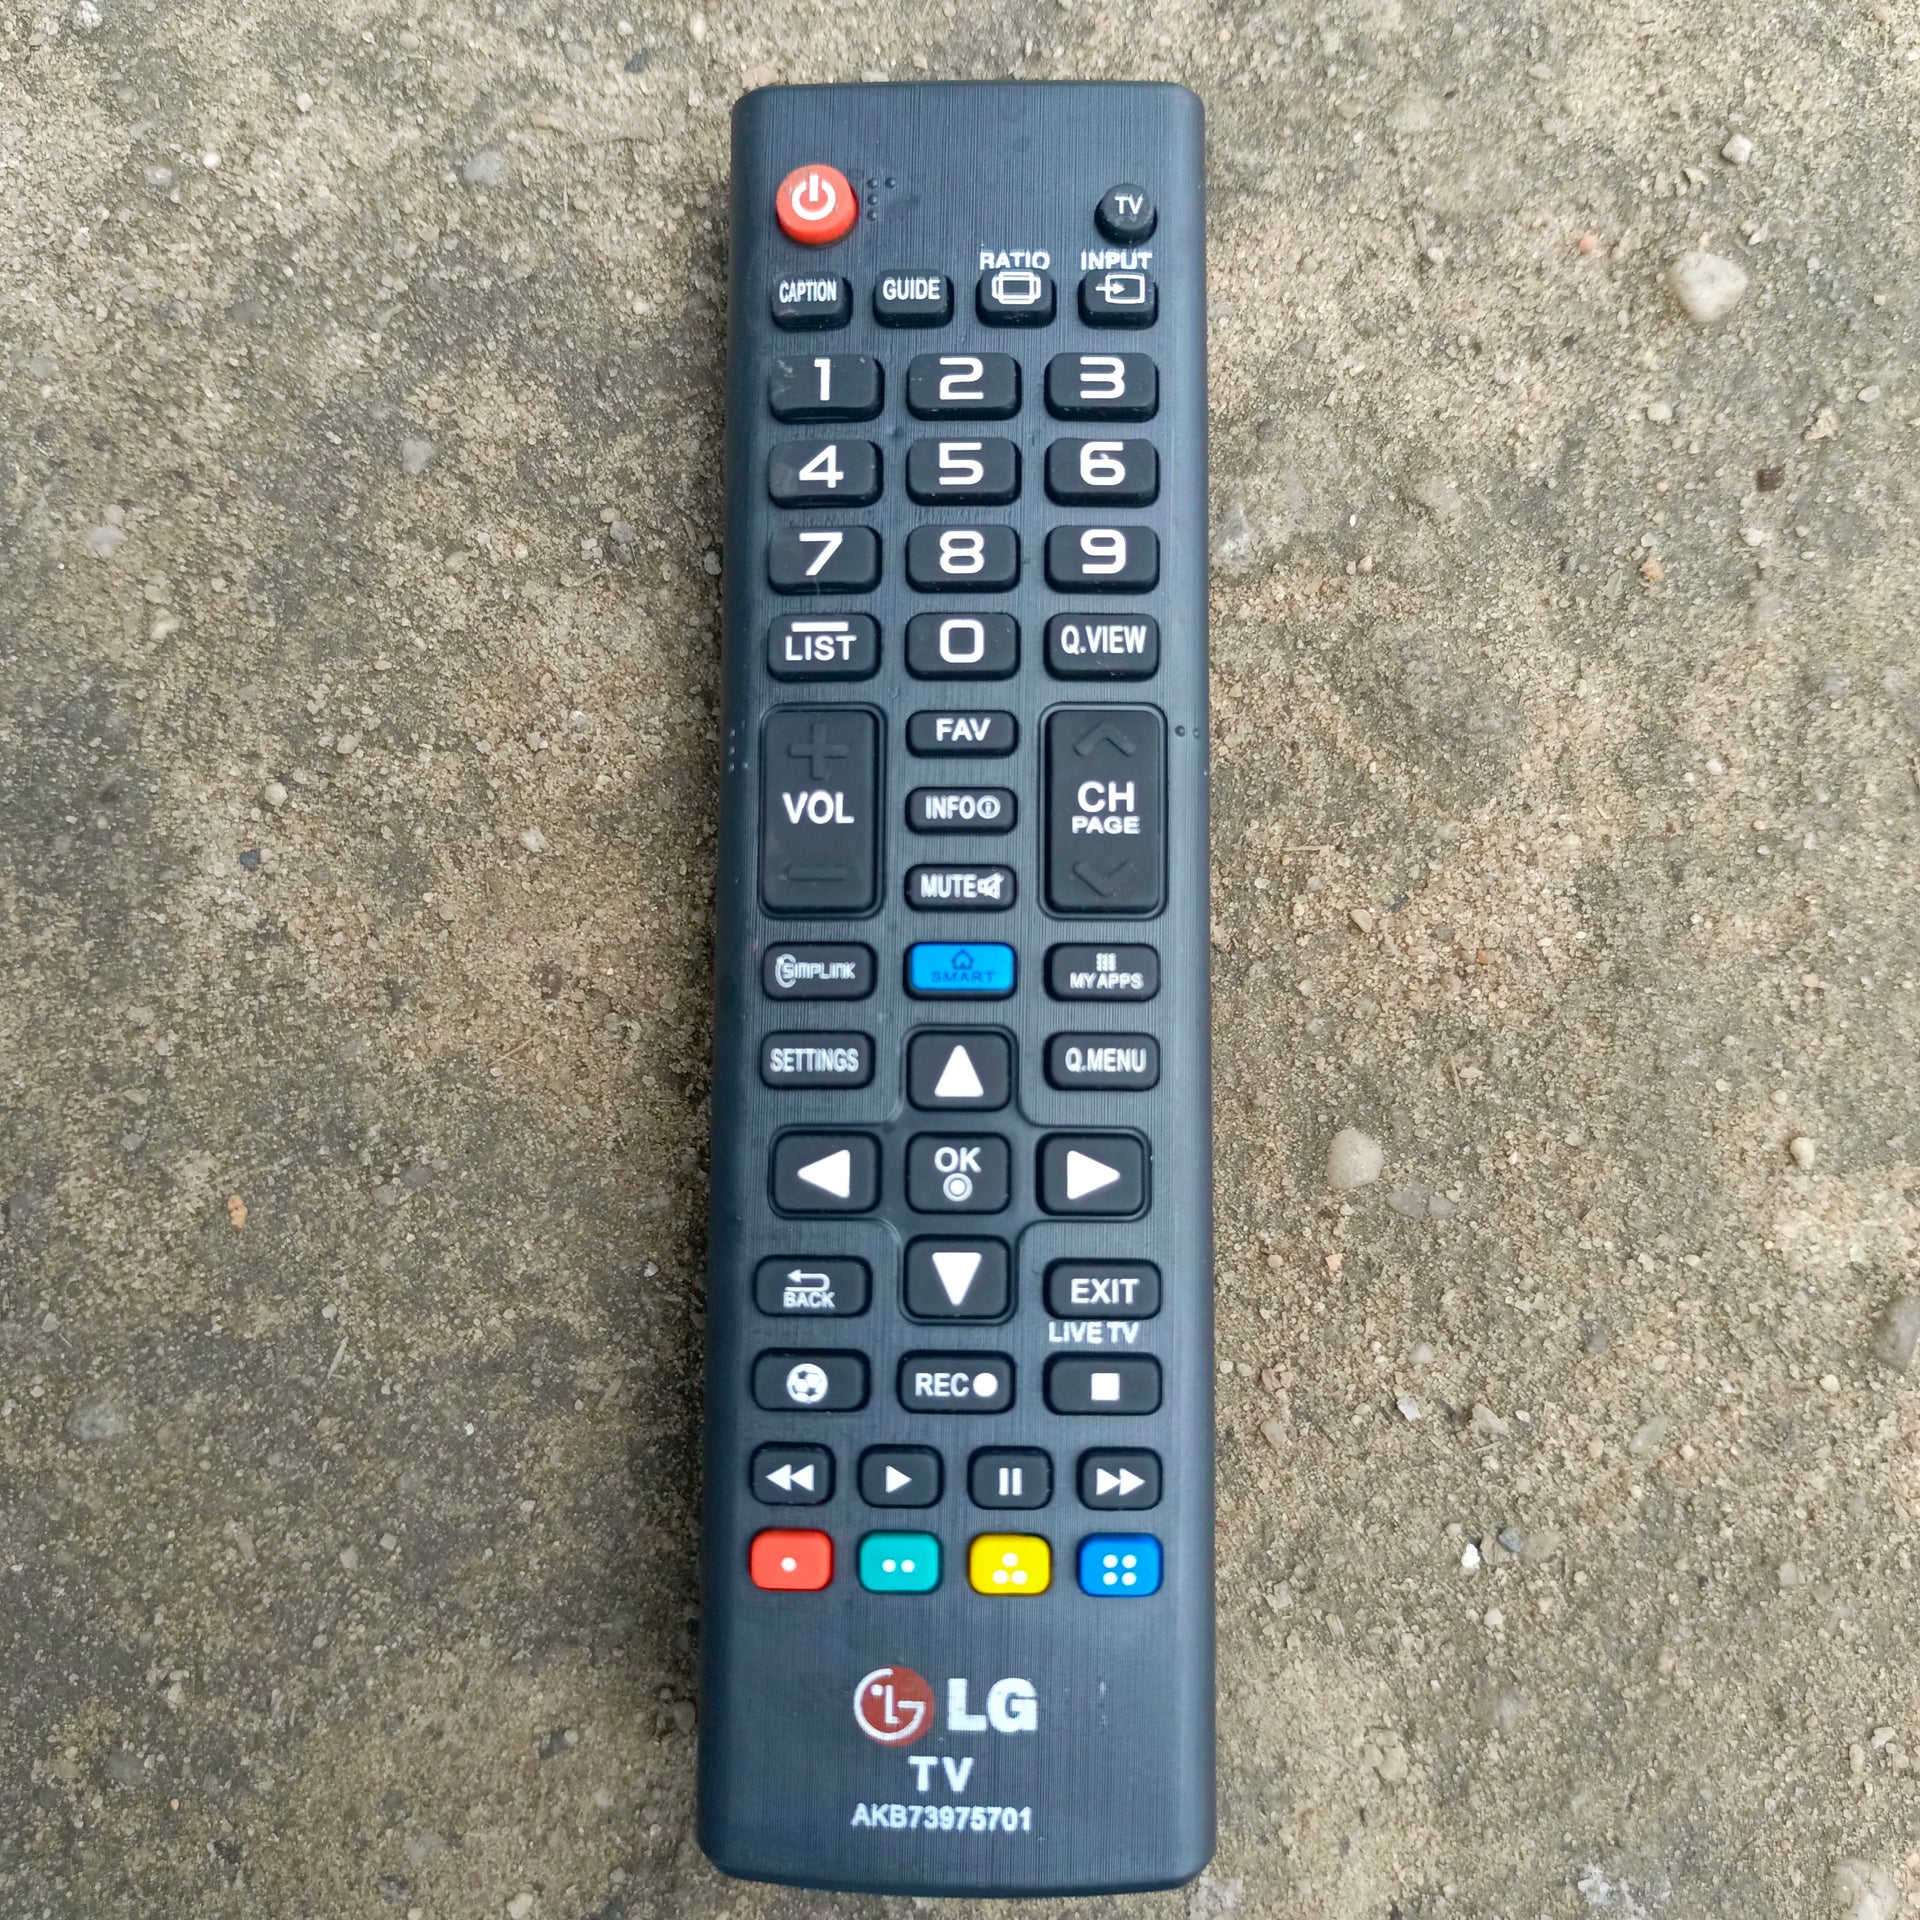 Control remoto Akb73975701 - Mando A Distancia Para Televisores LG